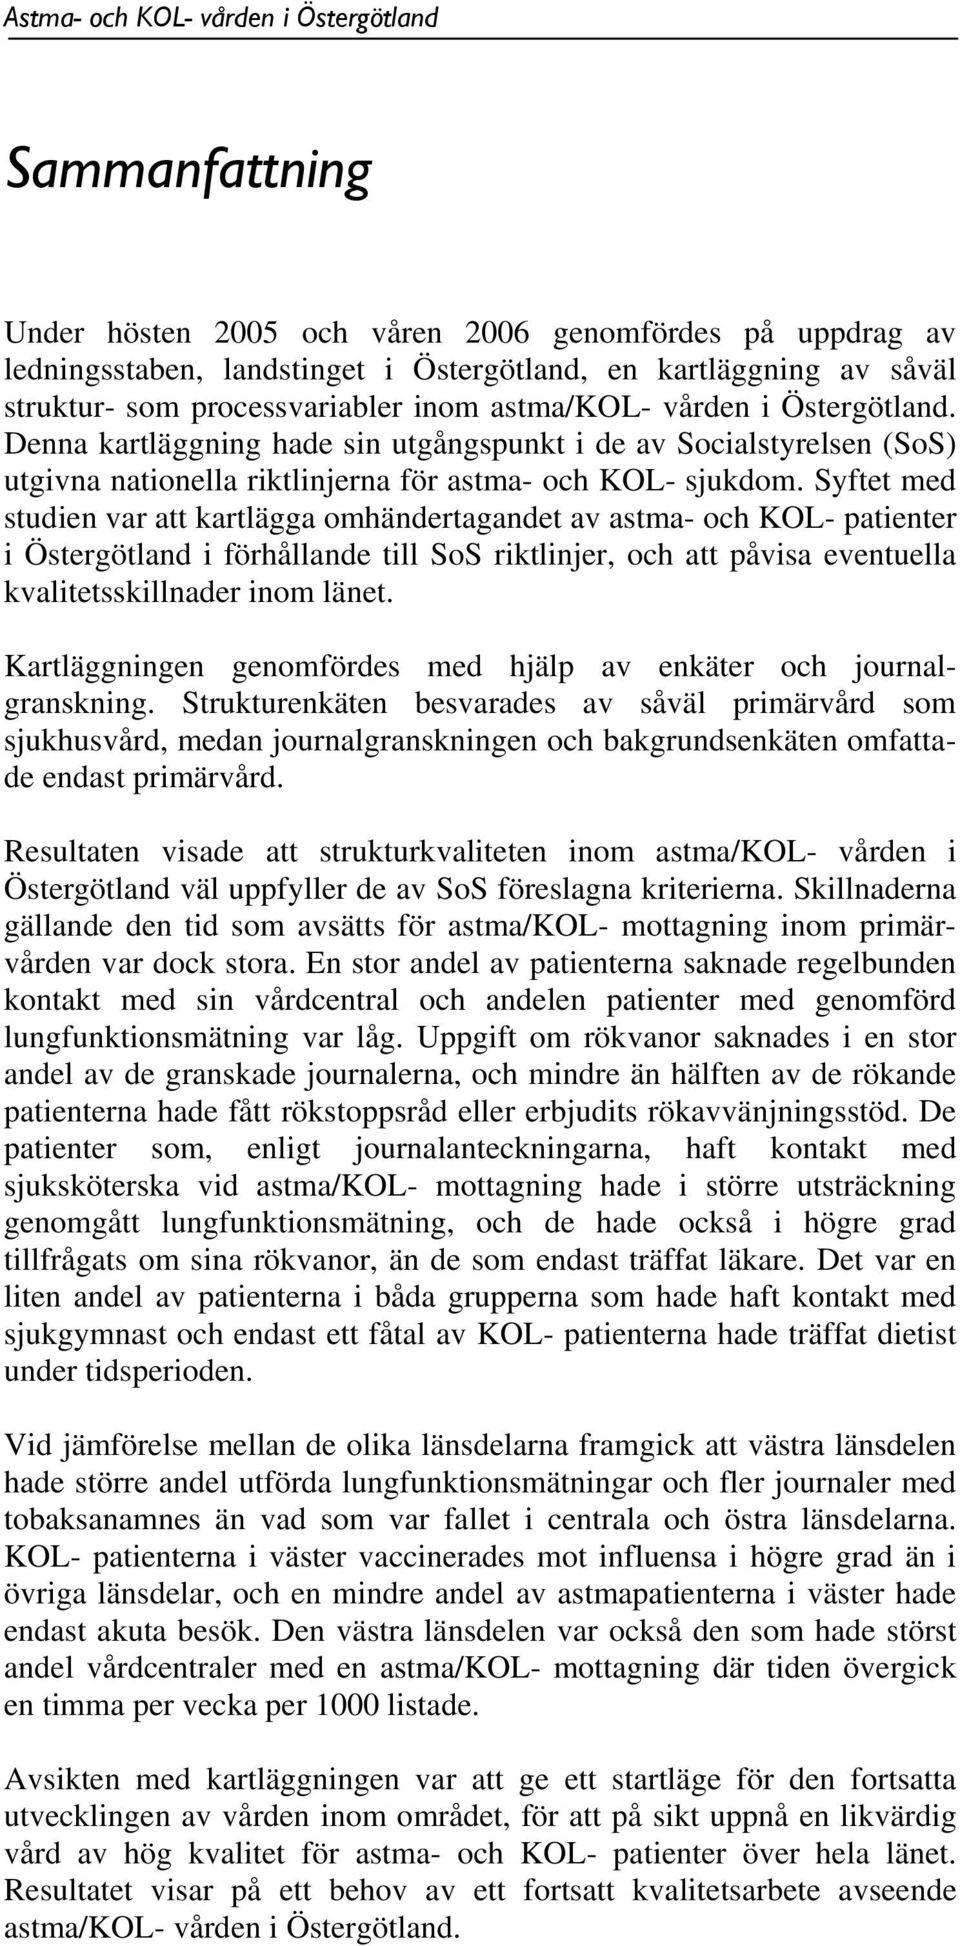 Syftet med studien var att kartlägga omhändertagandet av astma- och KOL- patienter i Östergötland i förhållande till SoS riktlinjer, och att påvisa eventuella kvalitetsskillnader inom länet.